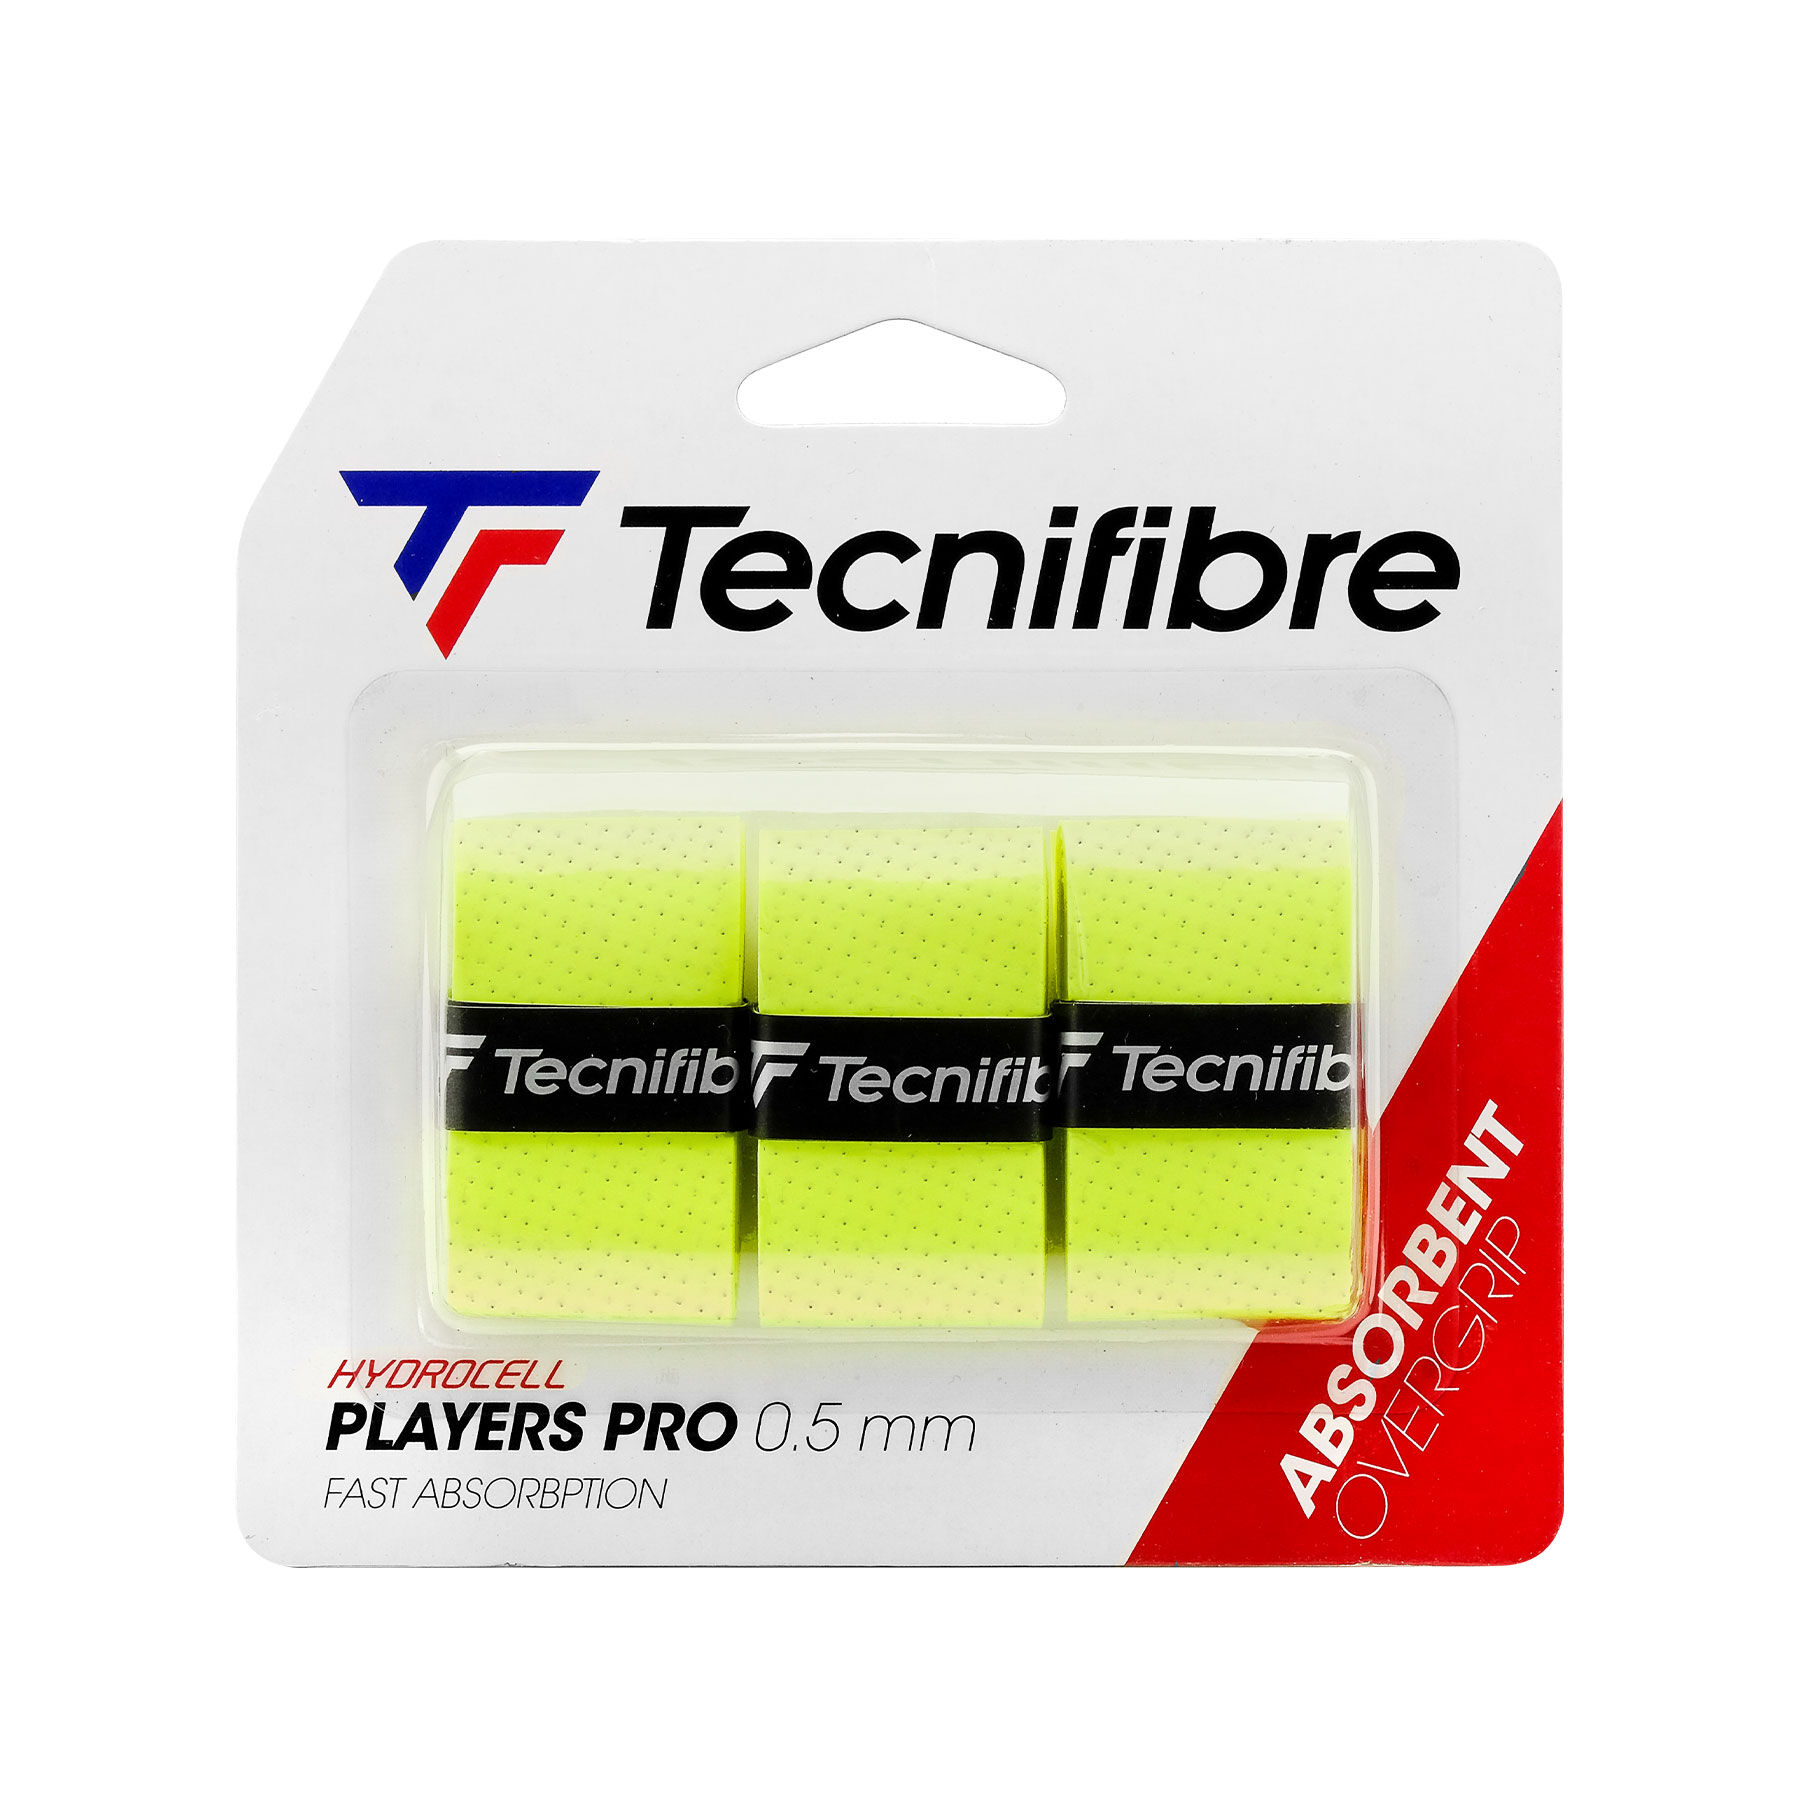 PLAYERS PRO NEON (boite de 12 packs) | Tecnifibre